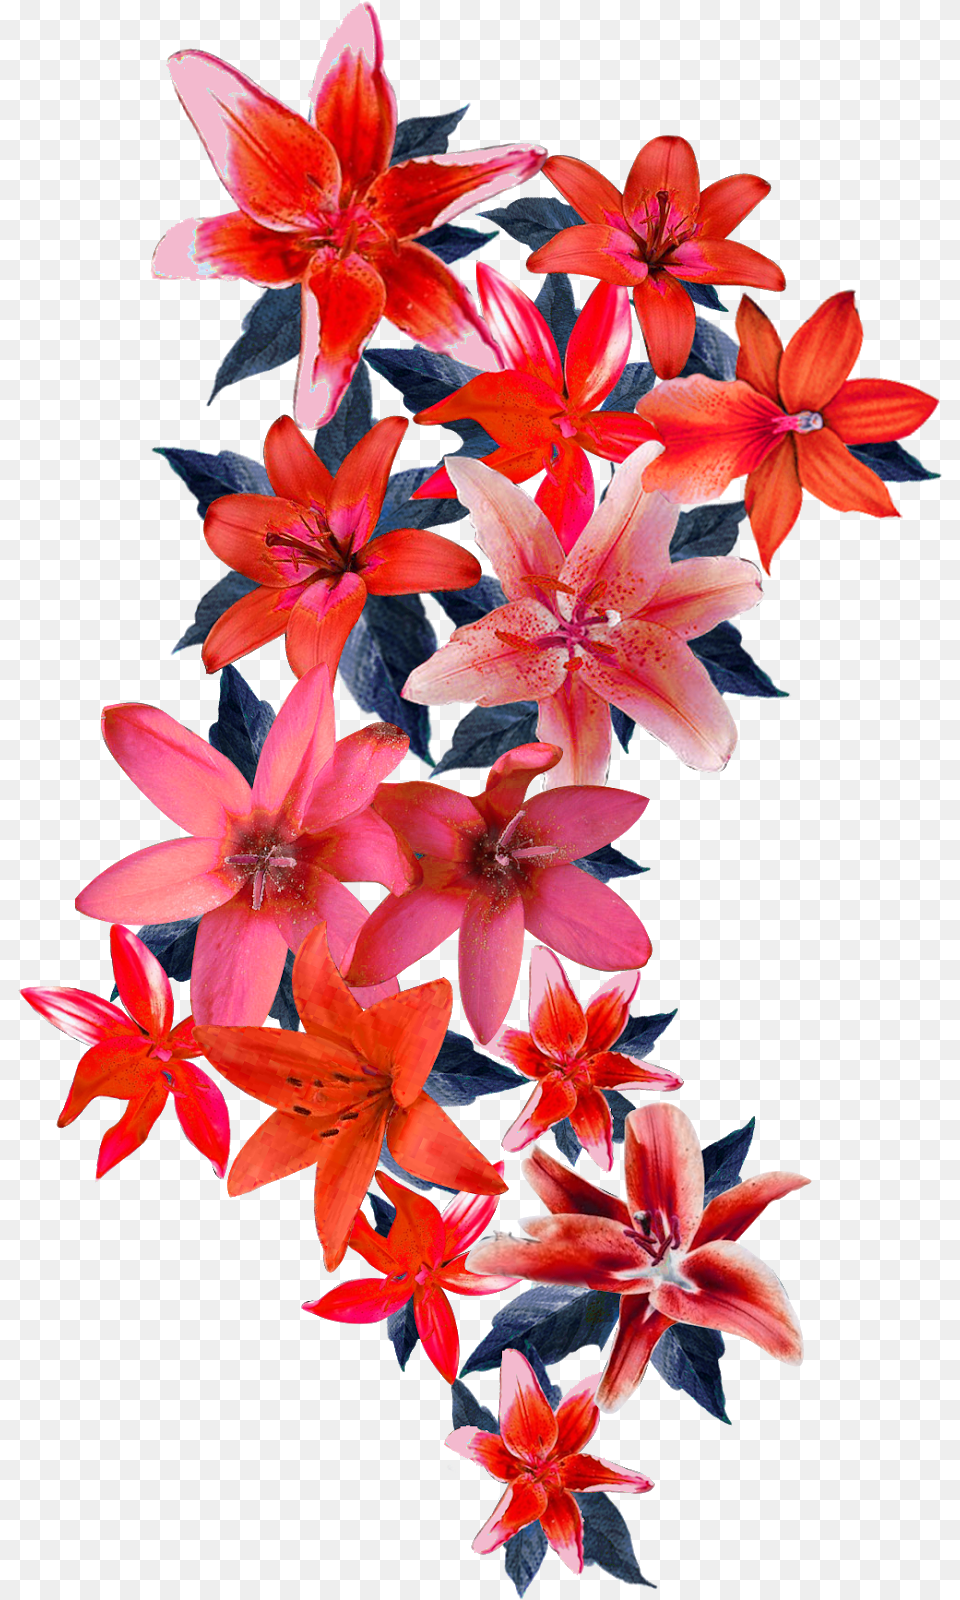 Vector Flower Design 2314 Flower Design Vector, Flower Arrangement, Plant, Flower Bouquet, Geranium Png Image